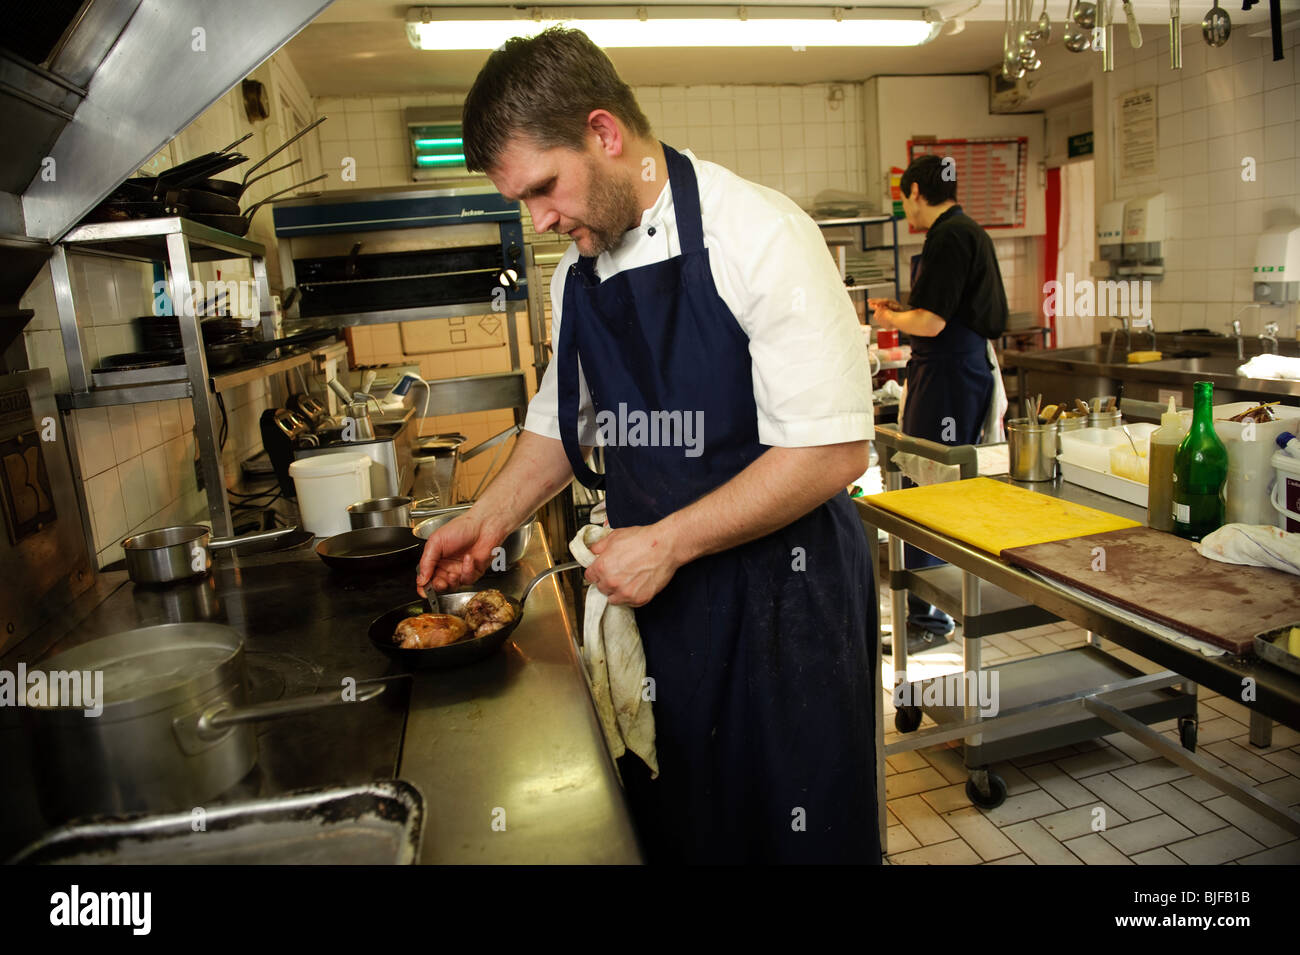 SHANE HUGHES, chef étoilé au guide Michelin à Ynyshir Hall Hotel, la préparation d'origine locale pour le déjeuner. Ynys Hir , Pays de Galles UK Banque D'Images